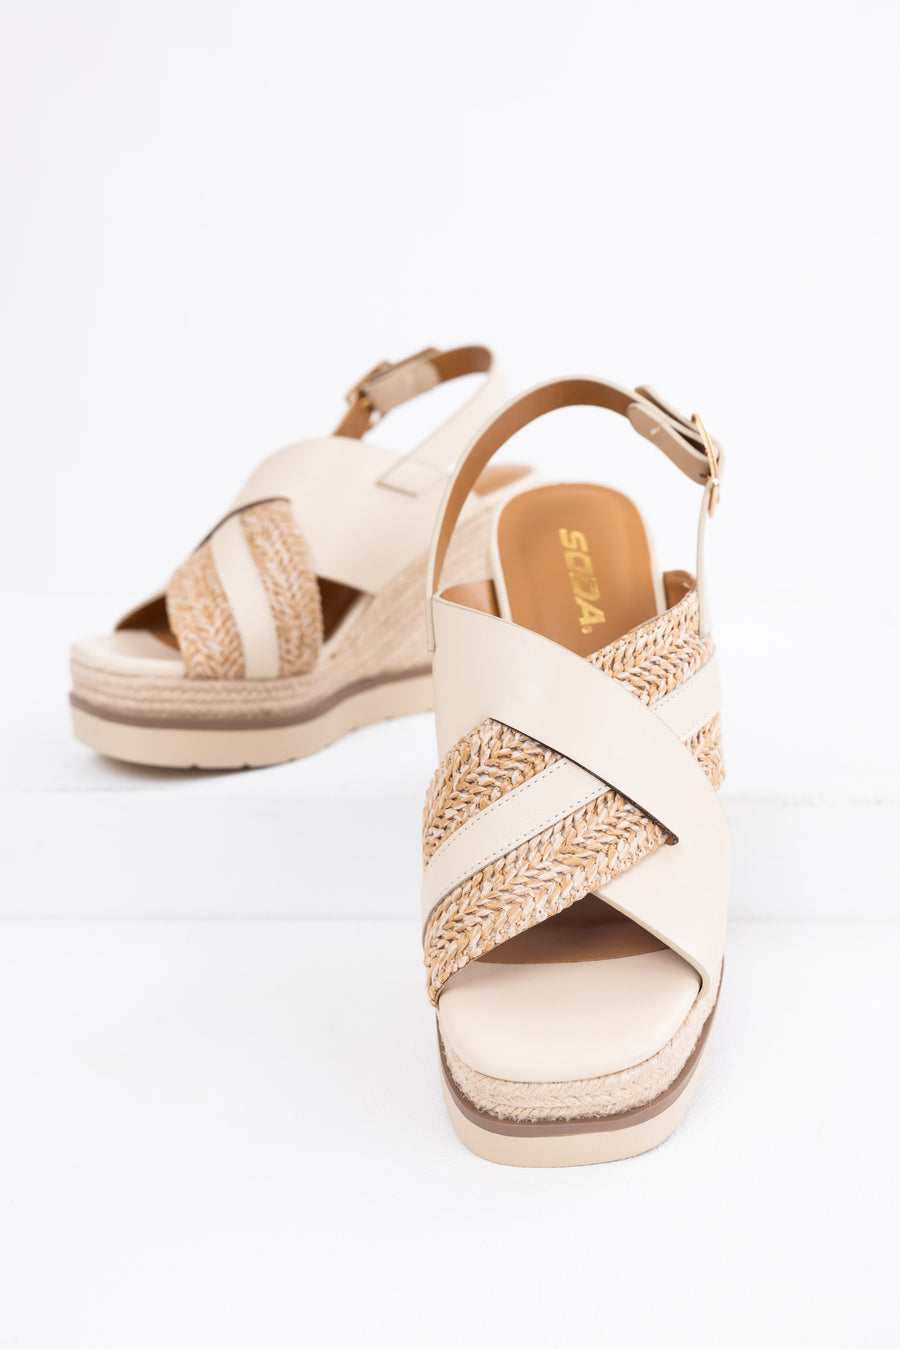 Summer Cute Sweet Woman Wedges Platform Sandals, cheapsalemarket.com